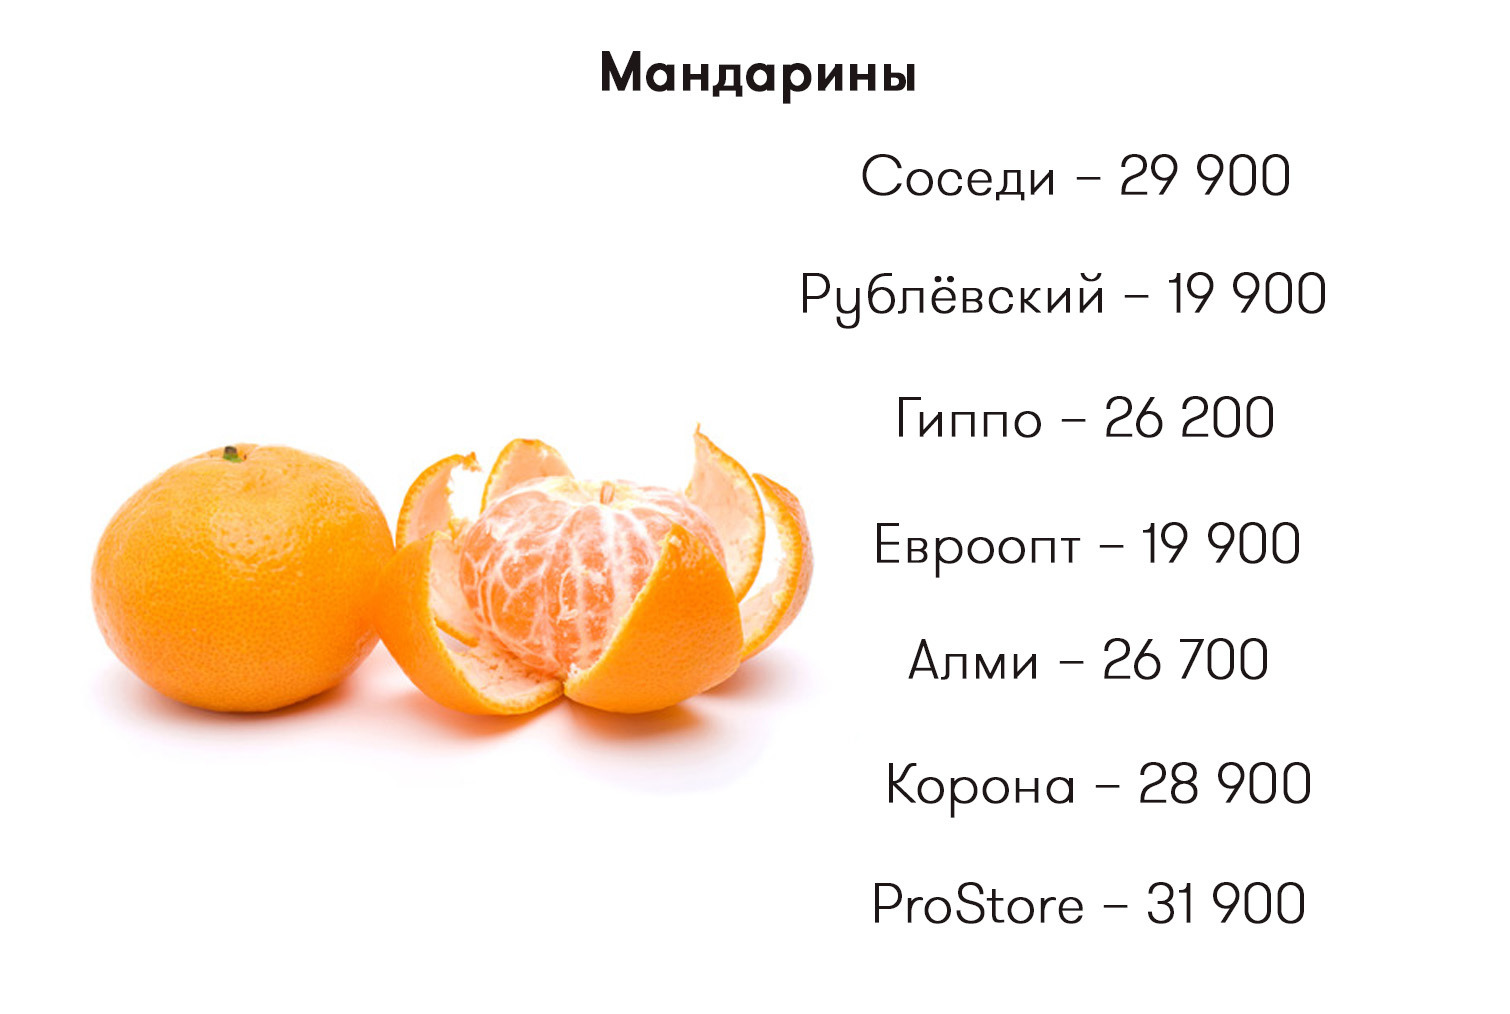 Калорийность апельсина на 100 грамм без кожуры.